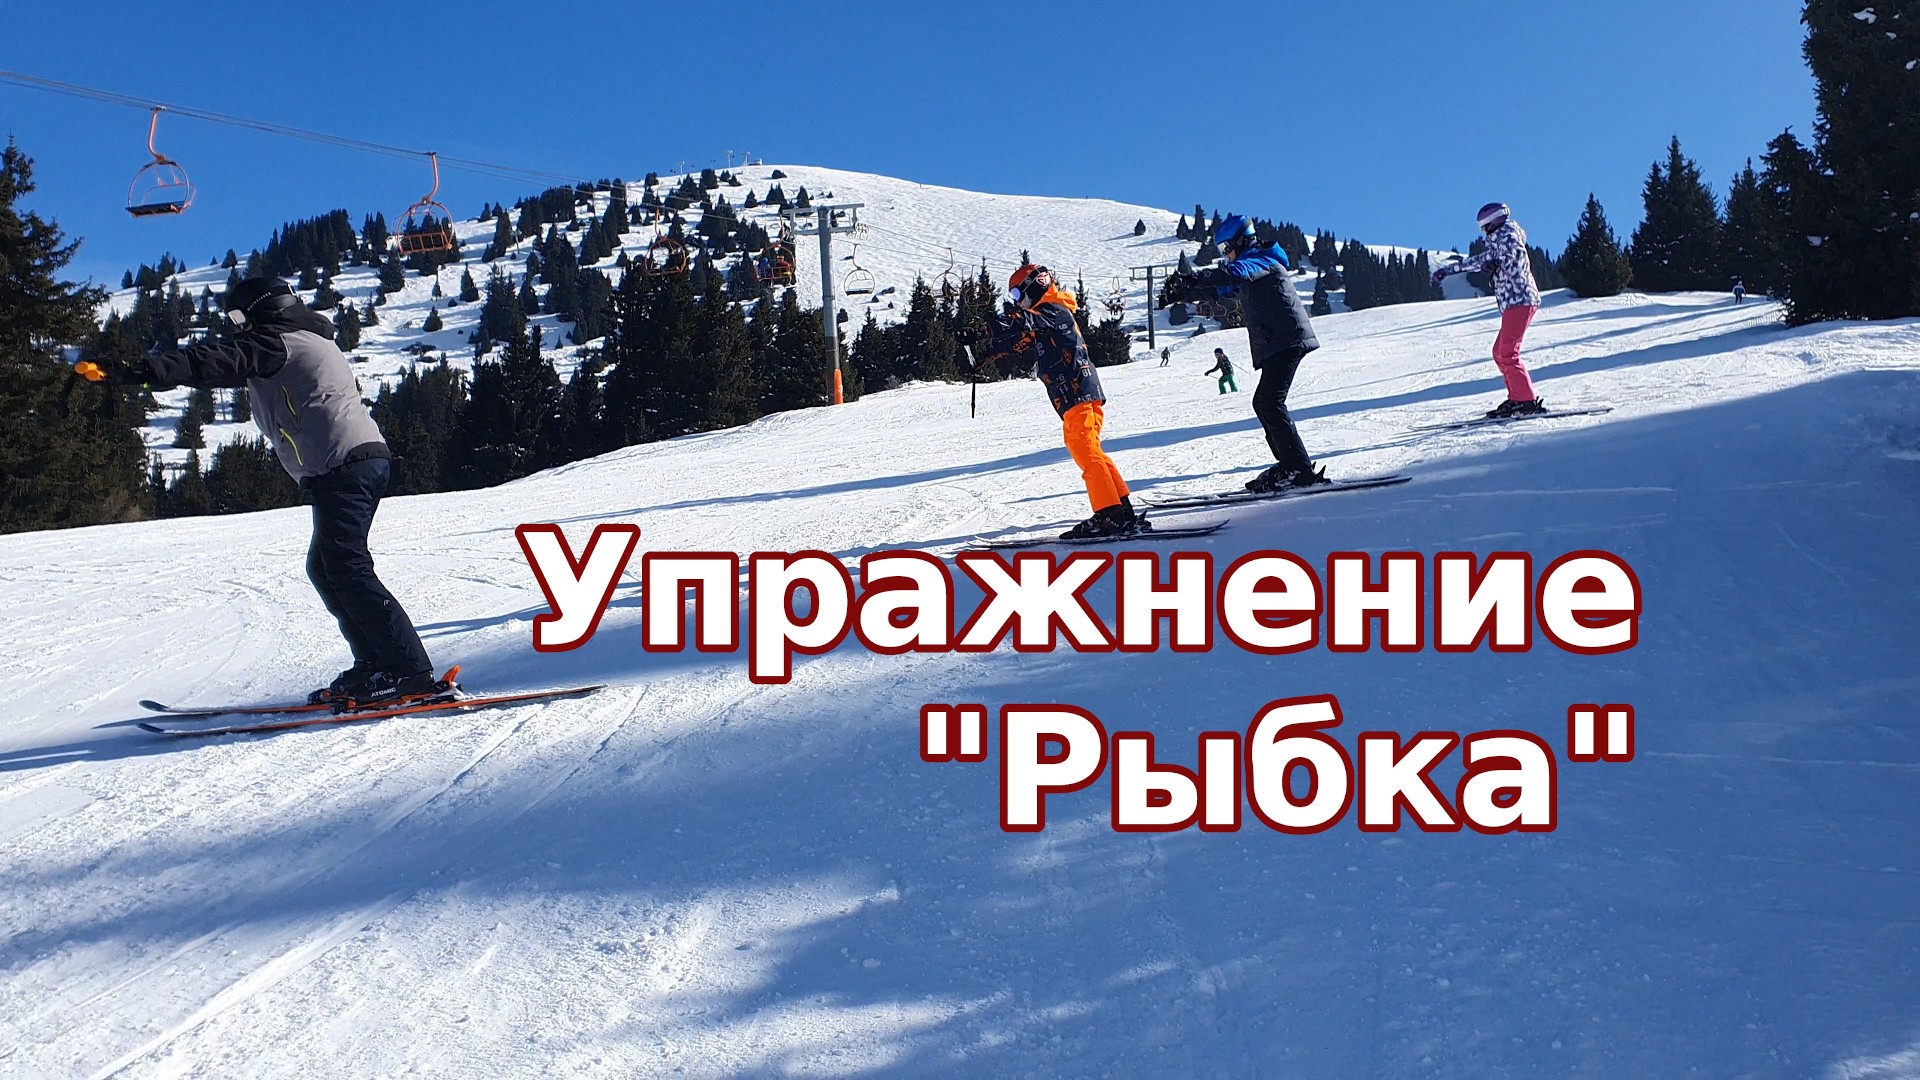 Упражнения для самостоятельной работы над улучшением техники горных лыж и сноуборда